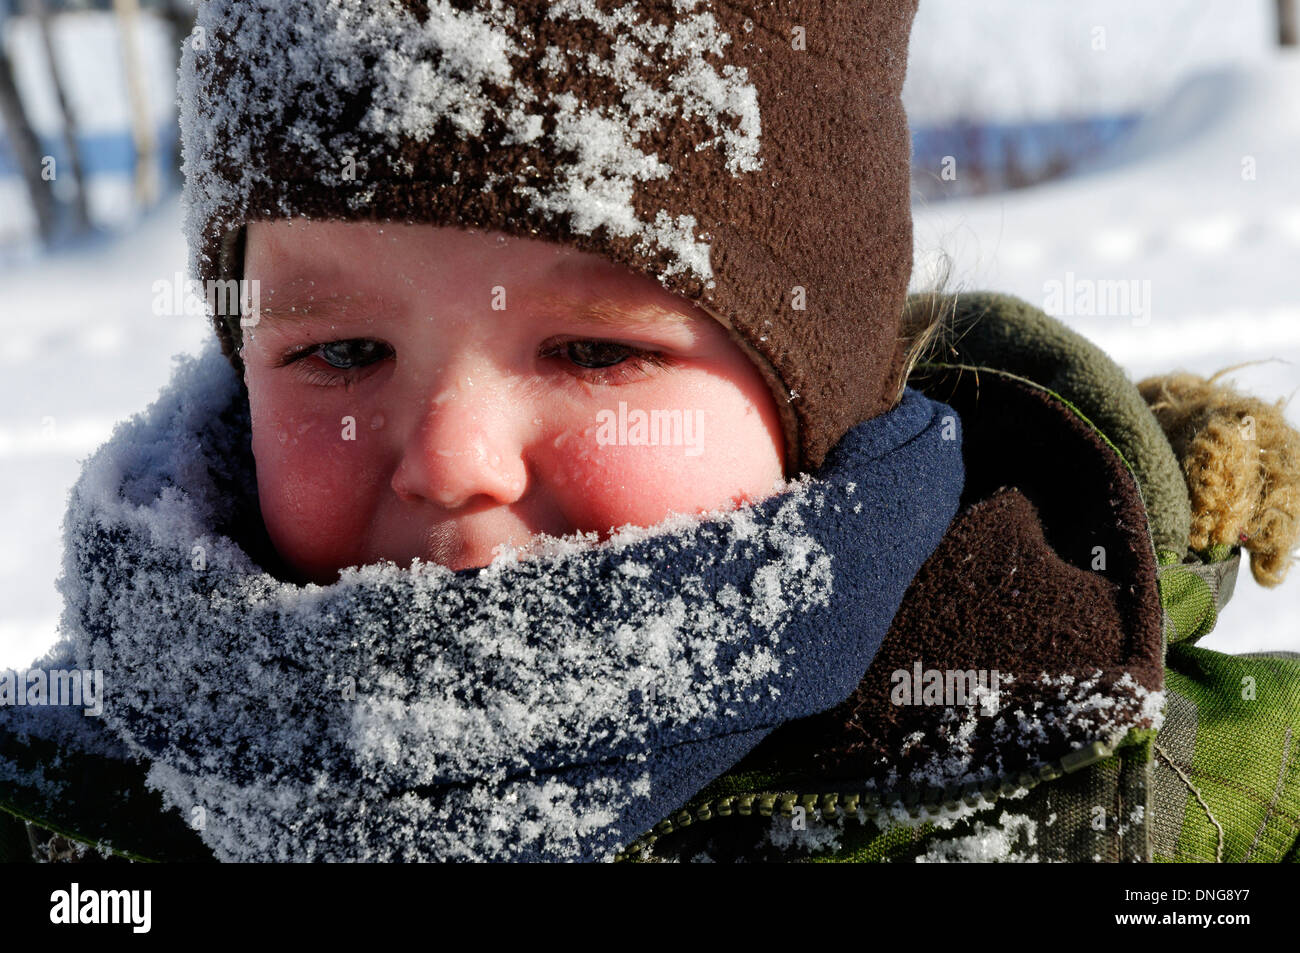 Un bébé de 20 espèce de garçon pleurer après tomber tête la première dans la neige (et papa était assez moyenne à tirer d'abord et de console après) Banque D'Images